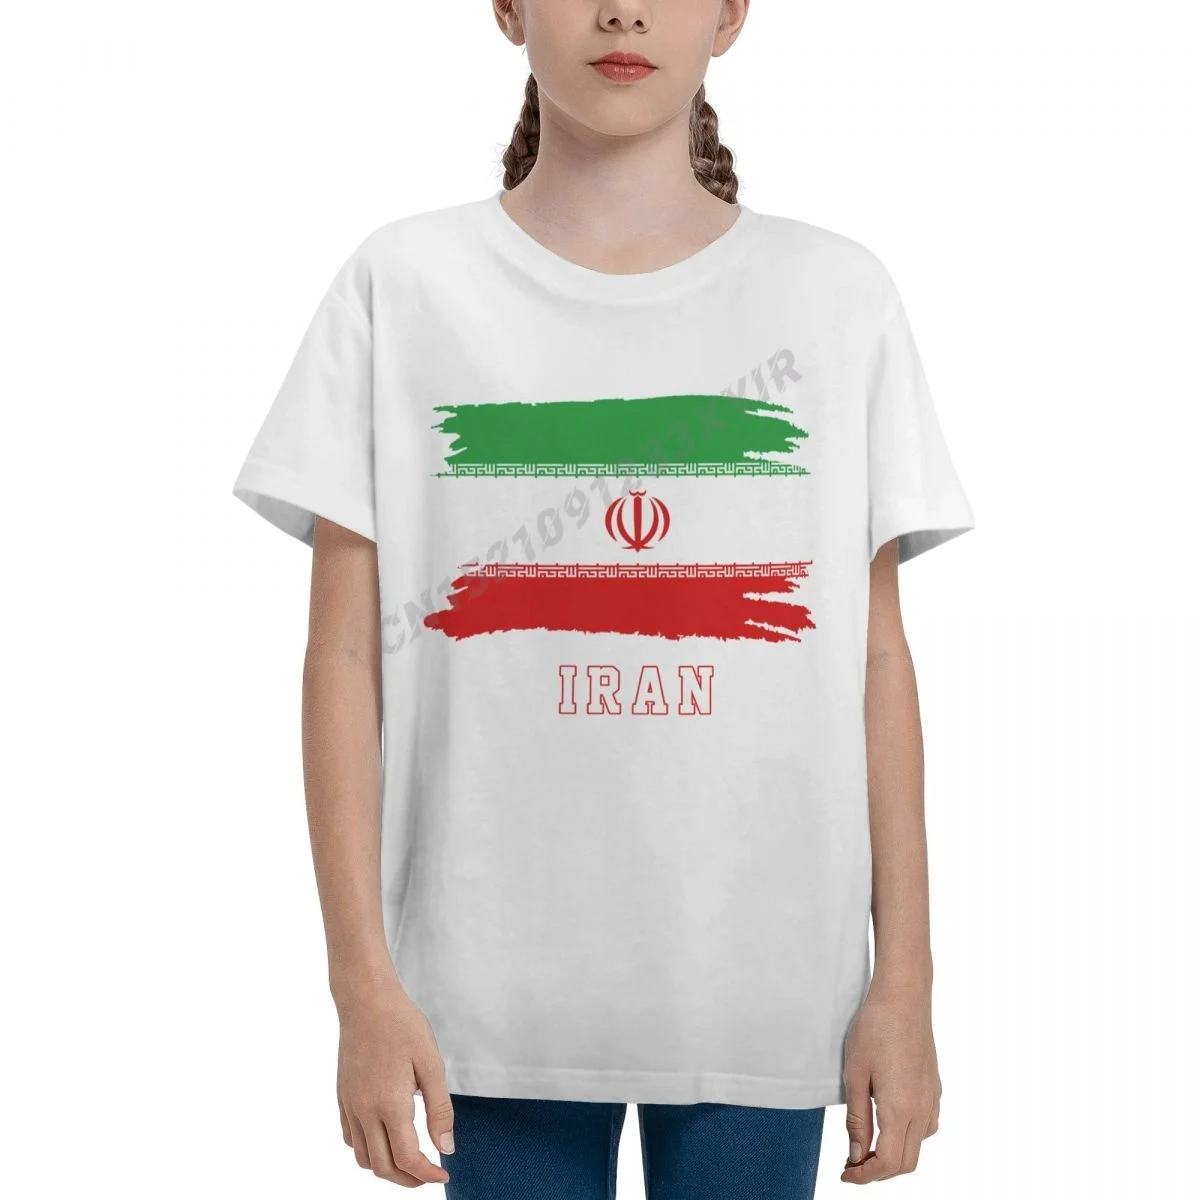 

Молодежная Футболка с флагом Ирана для мальчиков и девочек, крутая Детская футболка с флагом Ирана, футболка из 100% хлопка с круглым вырезом ...